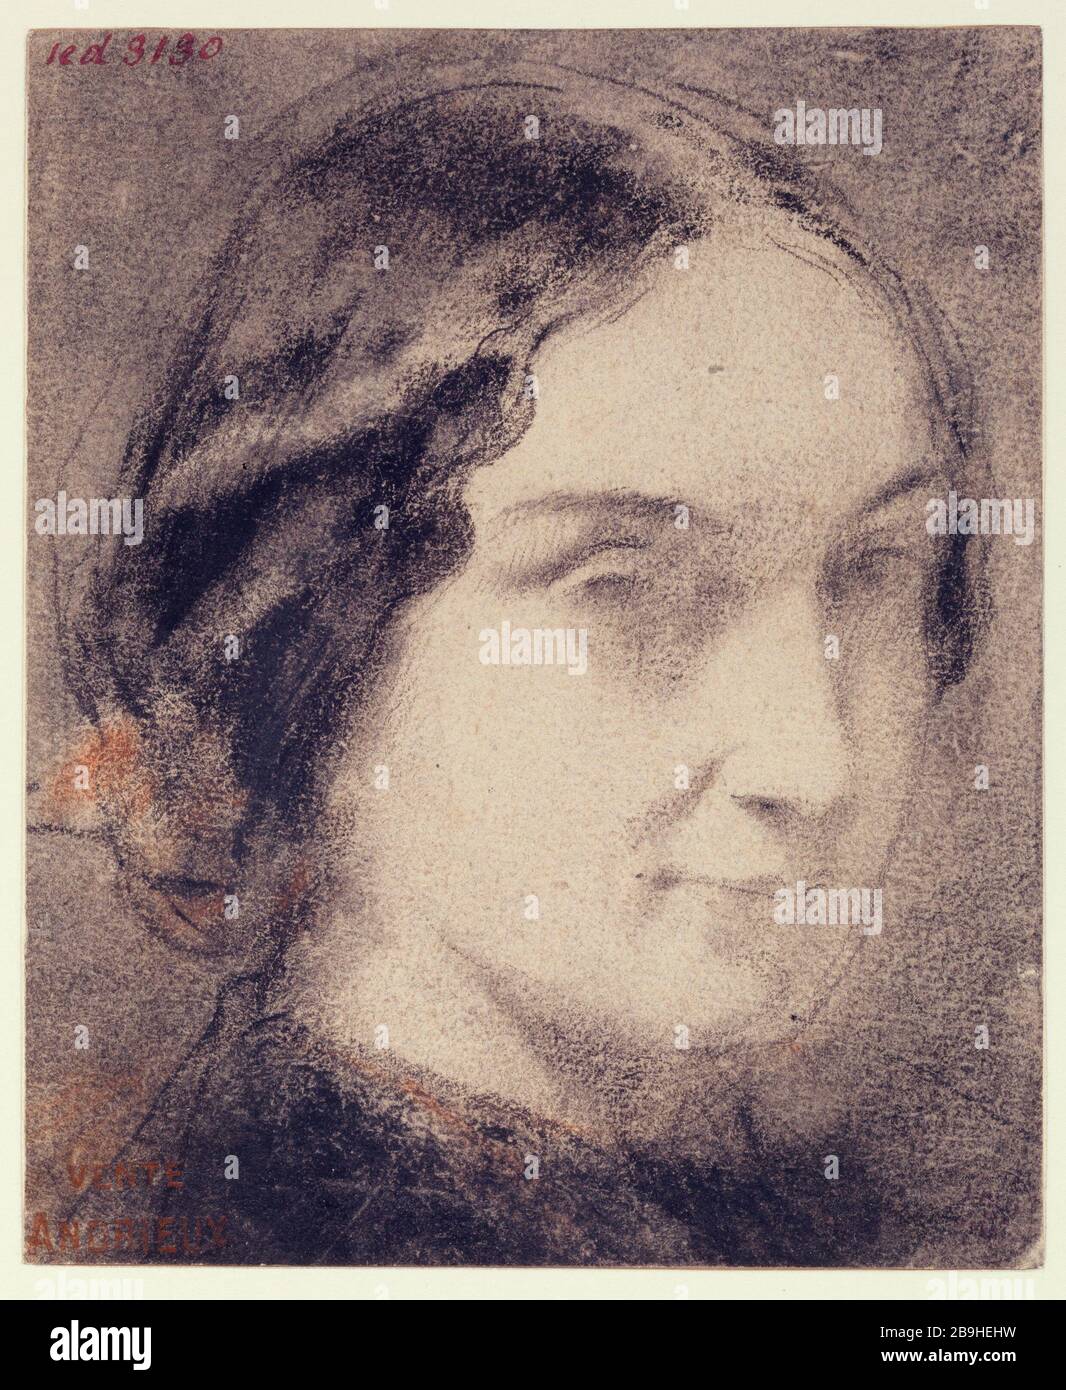 Ritratto di donna Clément-Auguste Andrieux (1829-1880). Ritratto de femme, 1829-1880. Fusain rehaussé de sanguine. Parigi, musée Carnavalet. Foto Stock